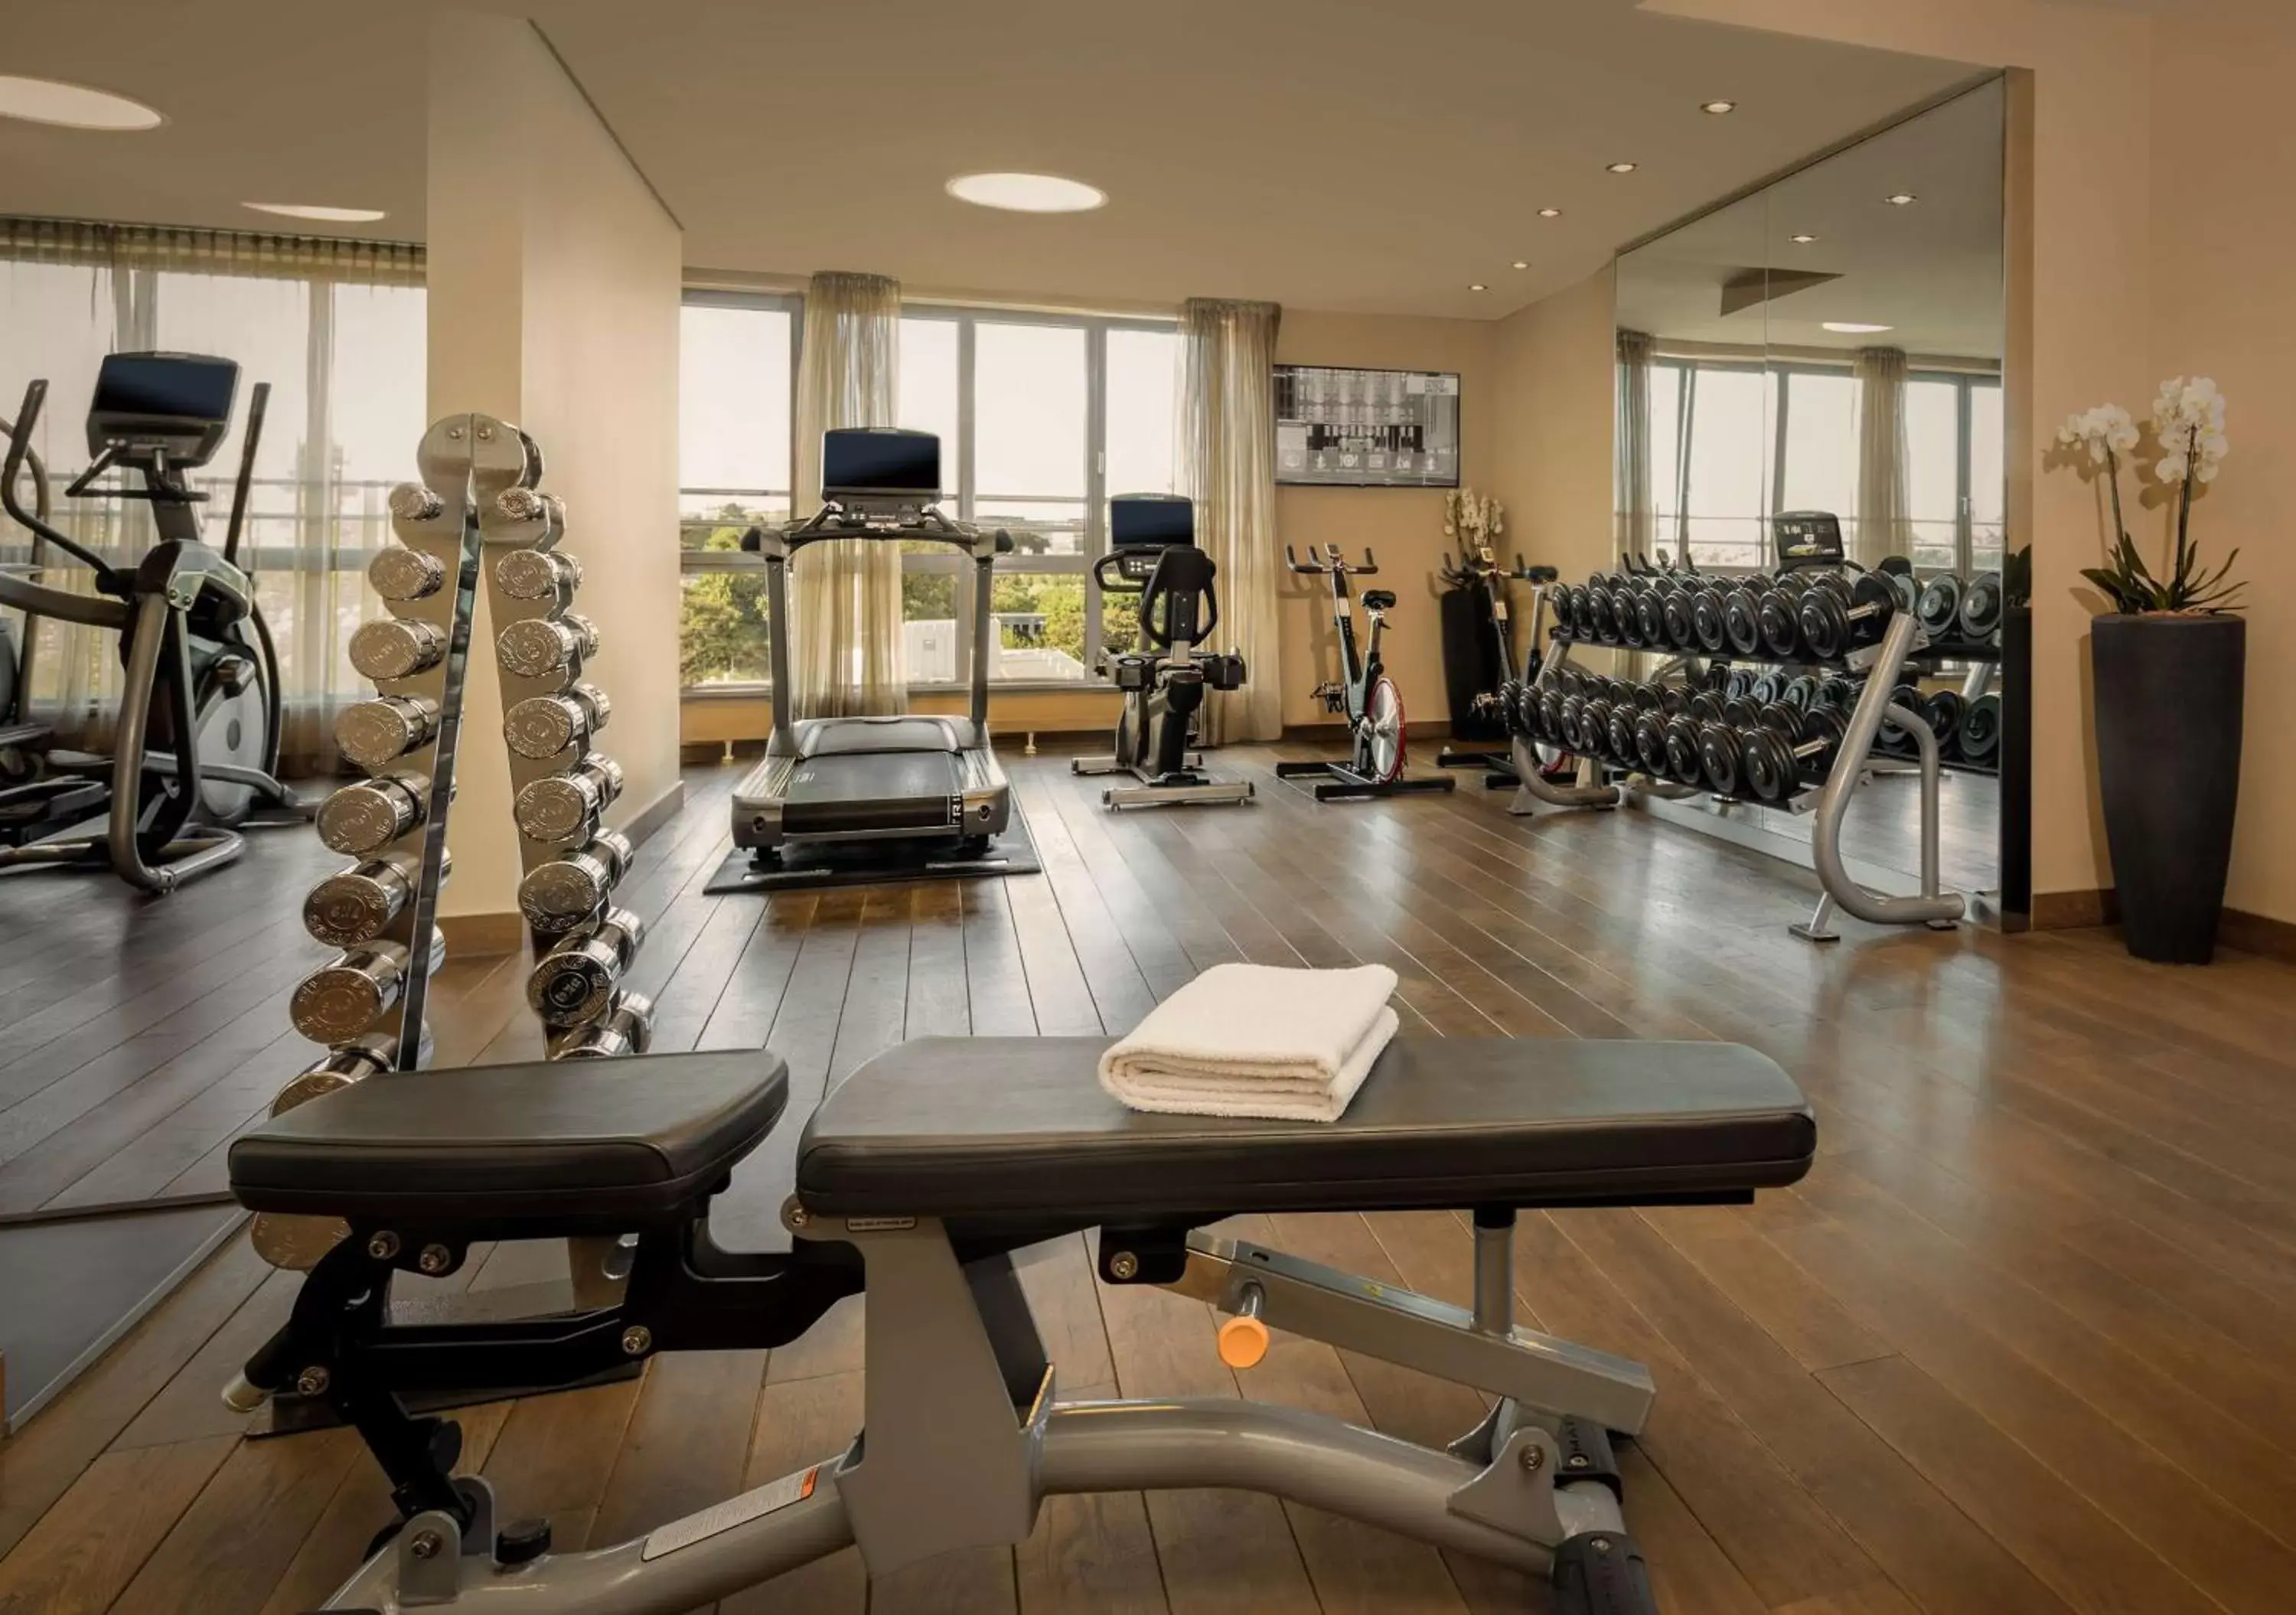 Fitness centre/facilities, Fitness Center/Facilities in Lindner Hotel Vienna Am Belvedere, part of JdV by Hyatt